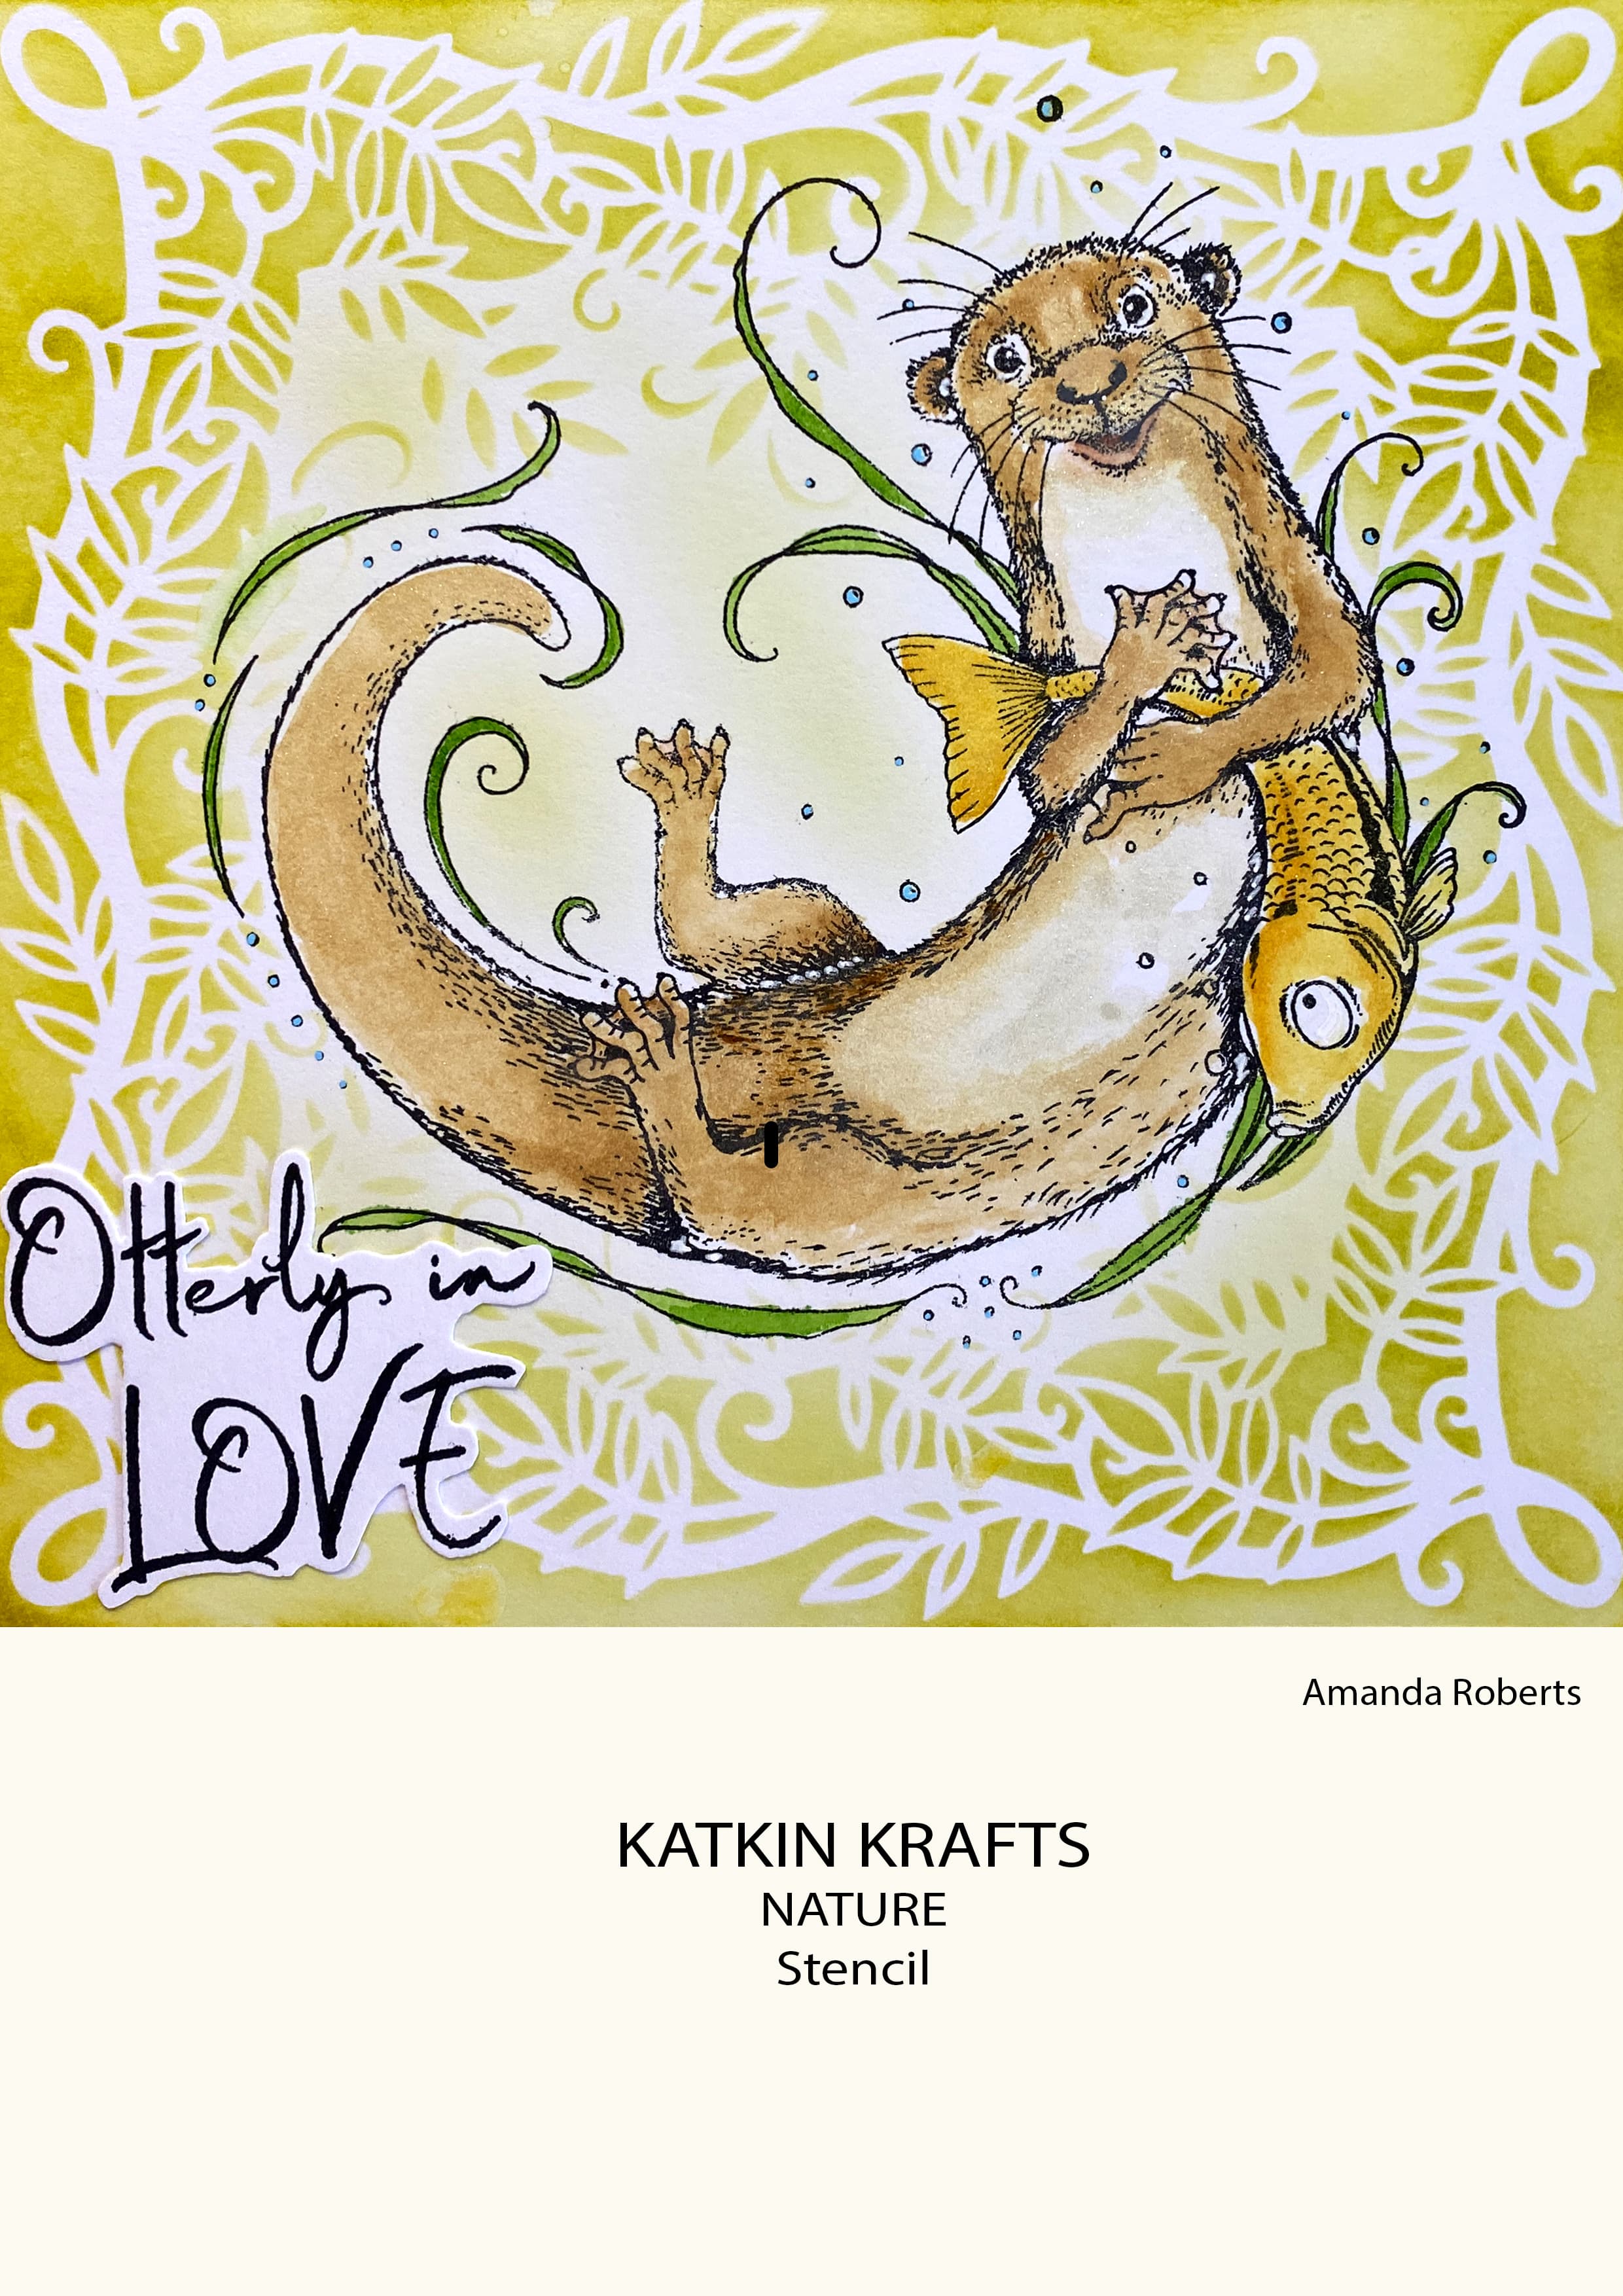 Katkin Krafts Nature 7 in x 7 in Stencil